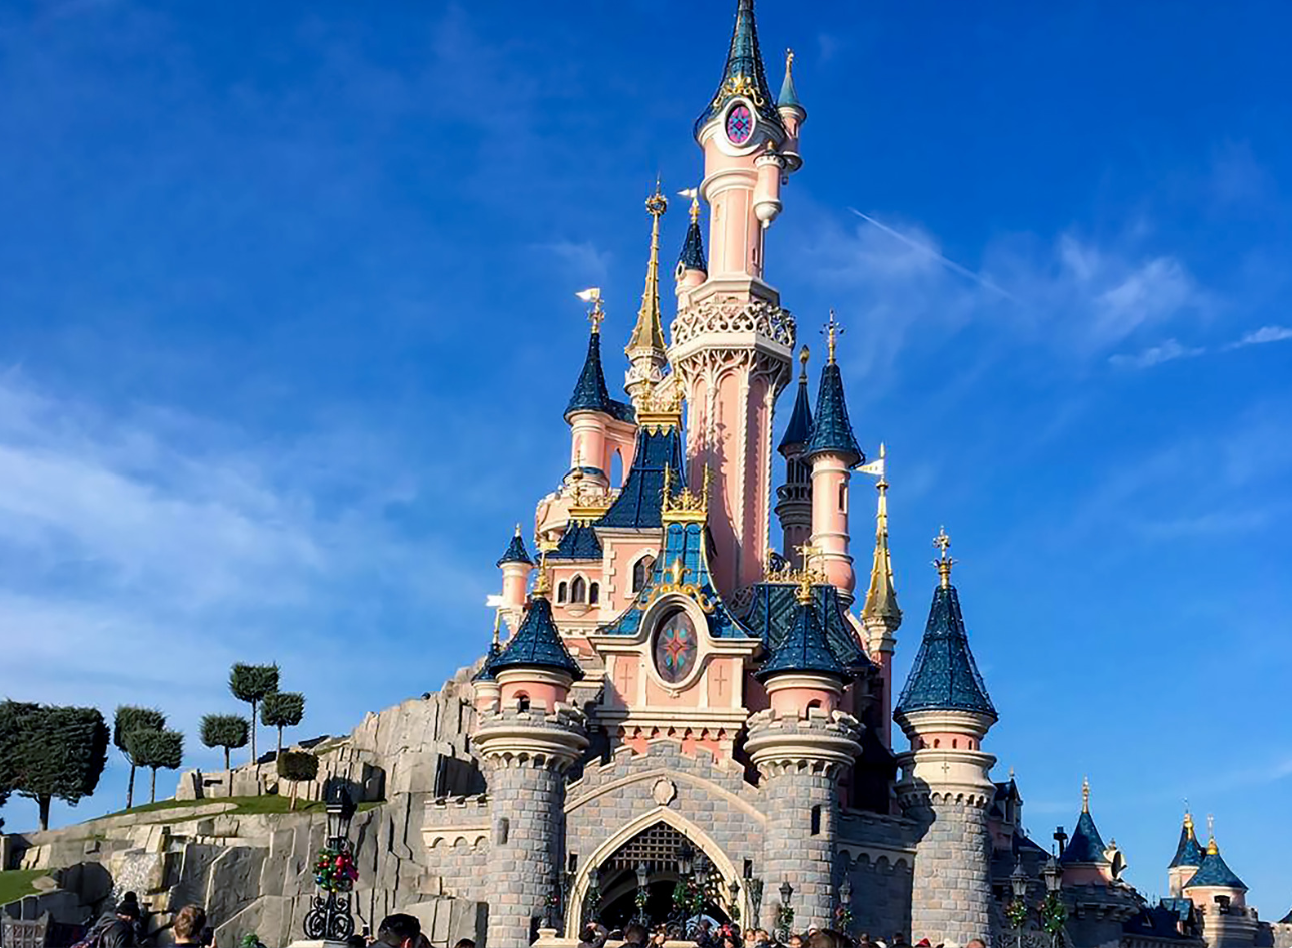 Quer fazer uma viagem em família Visite a Disneyland Paris